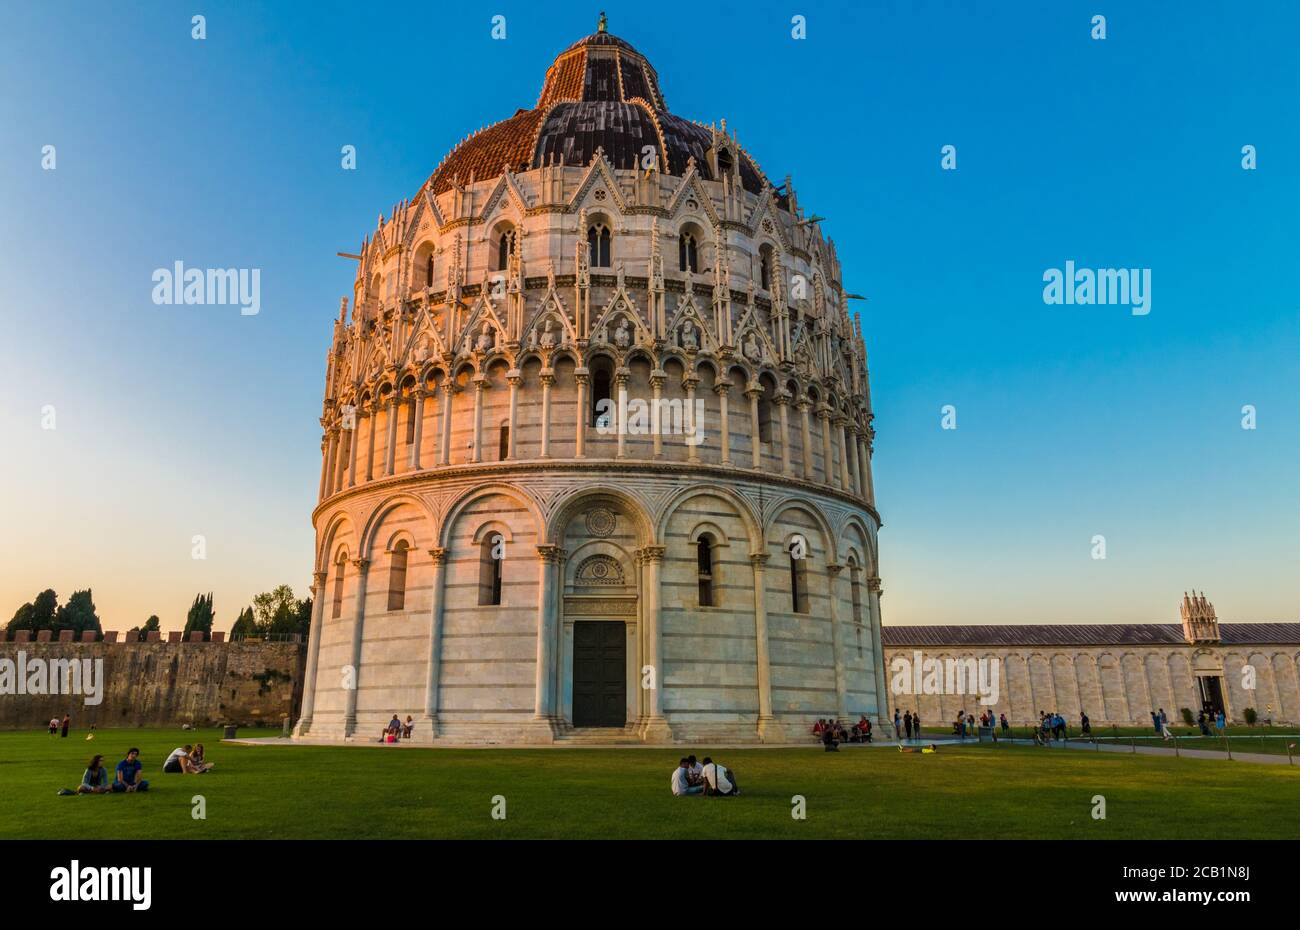 Herrliche Landschaft Aufnahme des berühmten Baptisterium von Pisa St. John. Auf dem Rasen vor der römisch-katholischen Kirche sitzen die Menschen ... Stockfoto